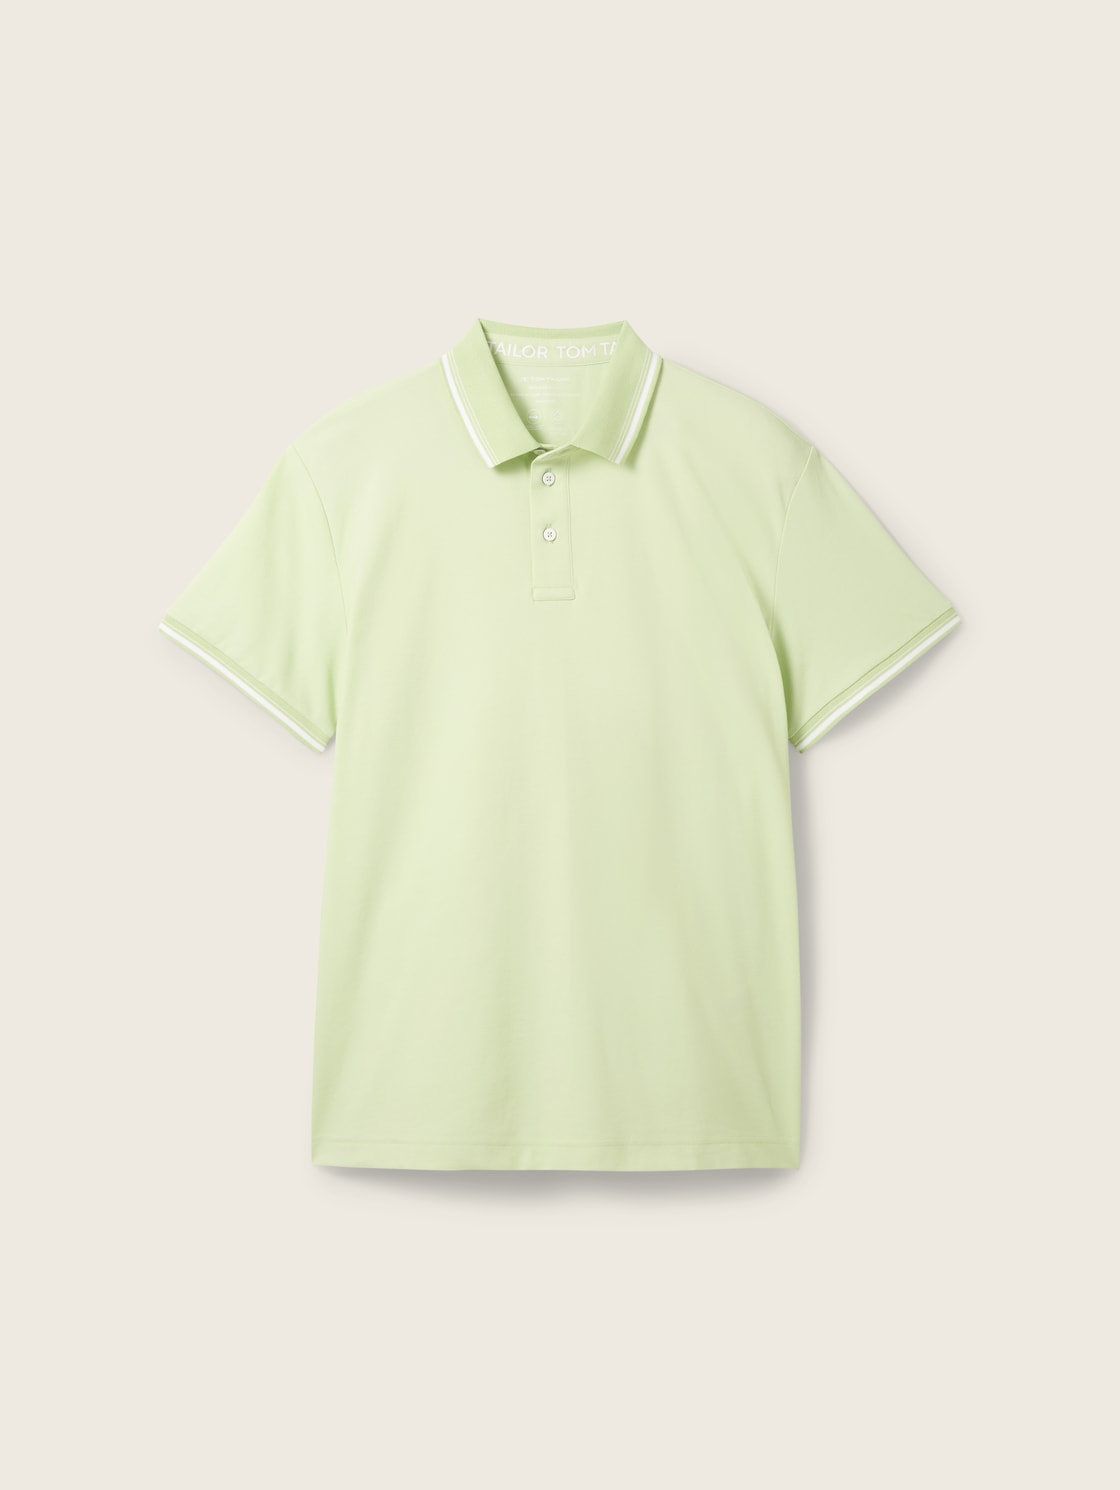 TOM TAILOR Herren COOLMAX® Poloshirt, grün, Uni, Gr. XXXL von Tom Tailor